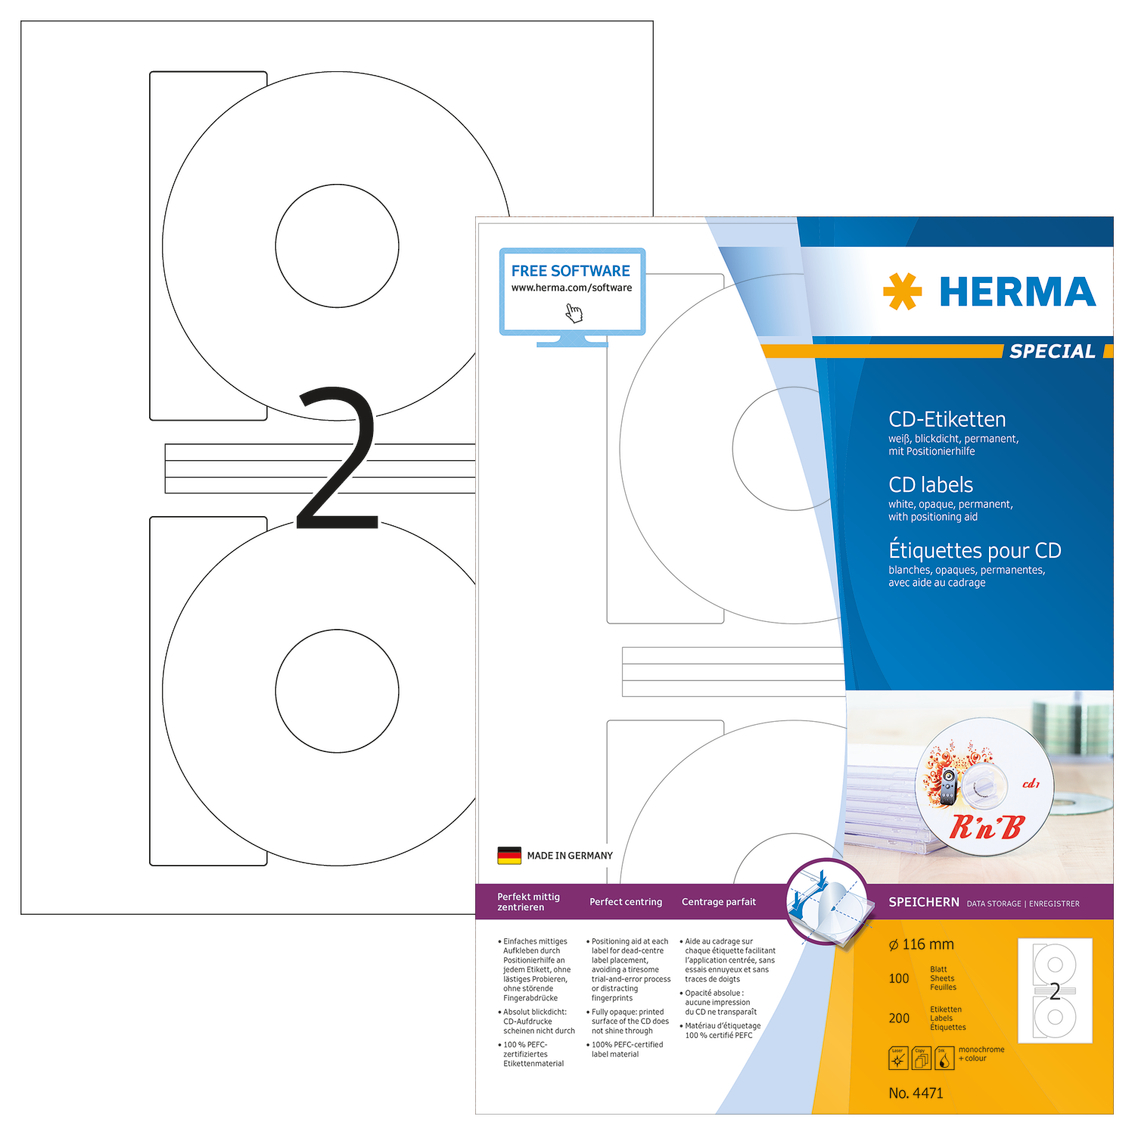 HERMA CD Etiquettes 4471 4471 116mm 200pcs. 100 f. 116mm 200pcs. 100 f.